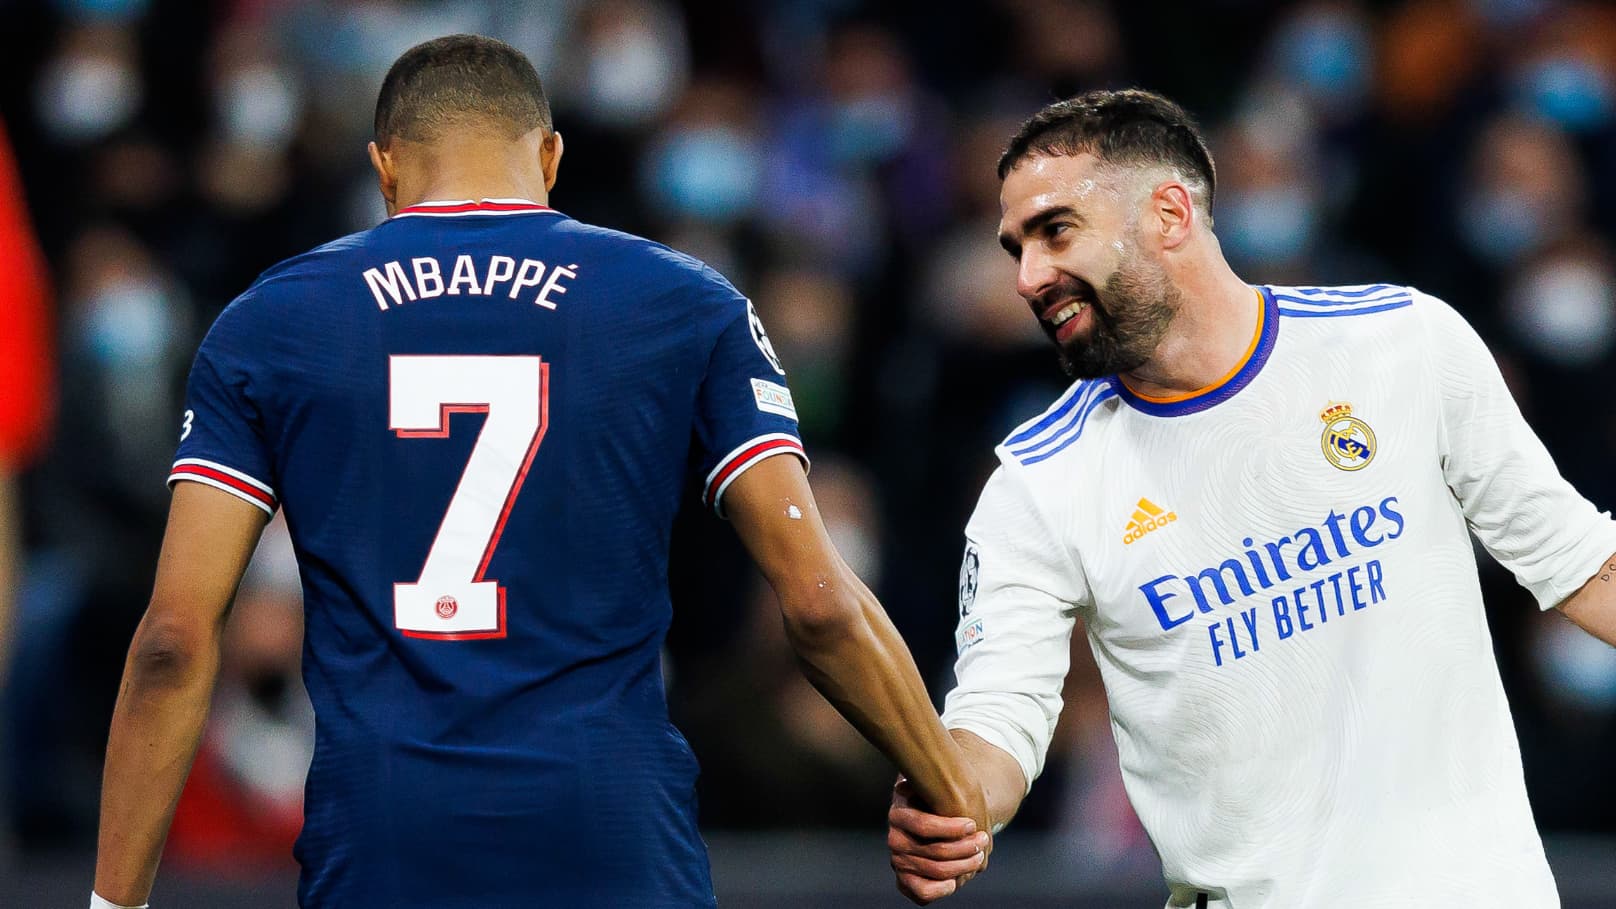 Real Madrid : la déclaration forte de Carvajal sur Mbappé, «L’arrivée de Mbappé ne.. »